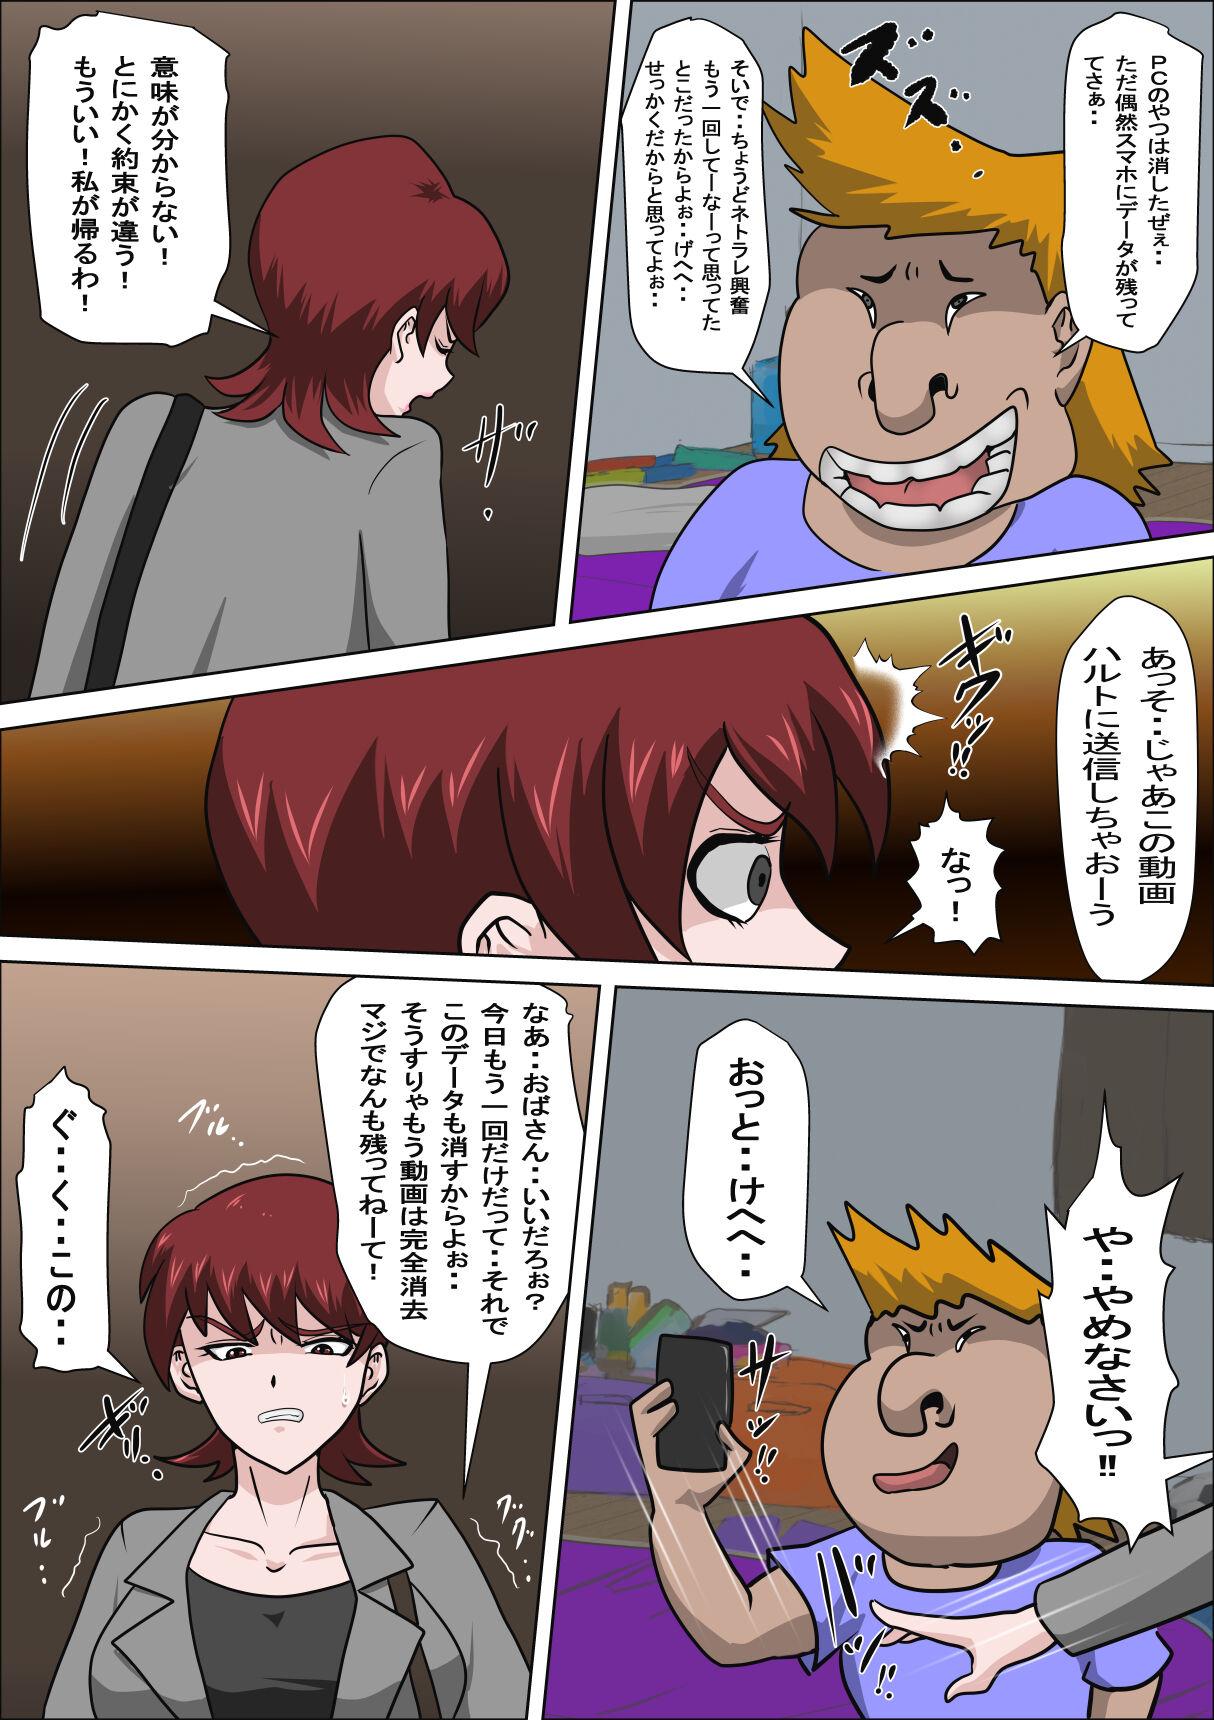 Flash Musuko no Doukyuusei ni Makura Eigyou Monogatari 4 - Original Indo - Page 5